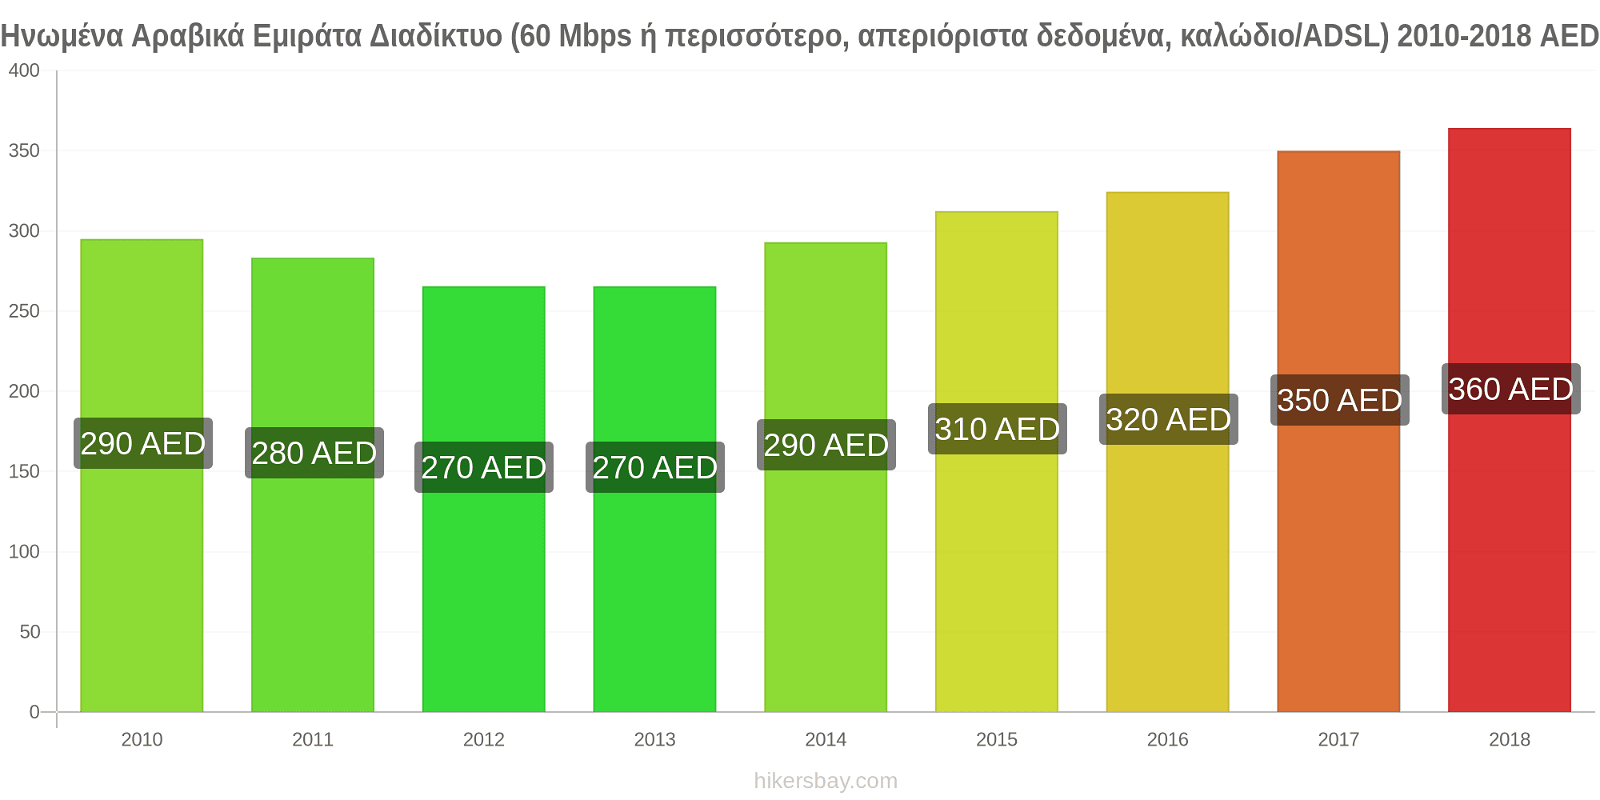 Ηνωμένα Αραβικά Εμιράτα αλλαγές τιμών Διαδίκτυο (60 Mbps ή περισσότερο, απεριόριστα δεδομένα, καλώδιο/ADSL) hikersbay.com